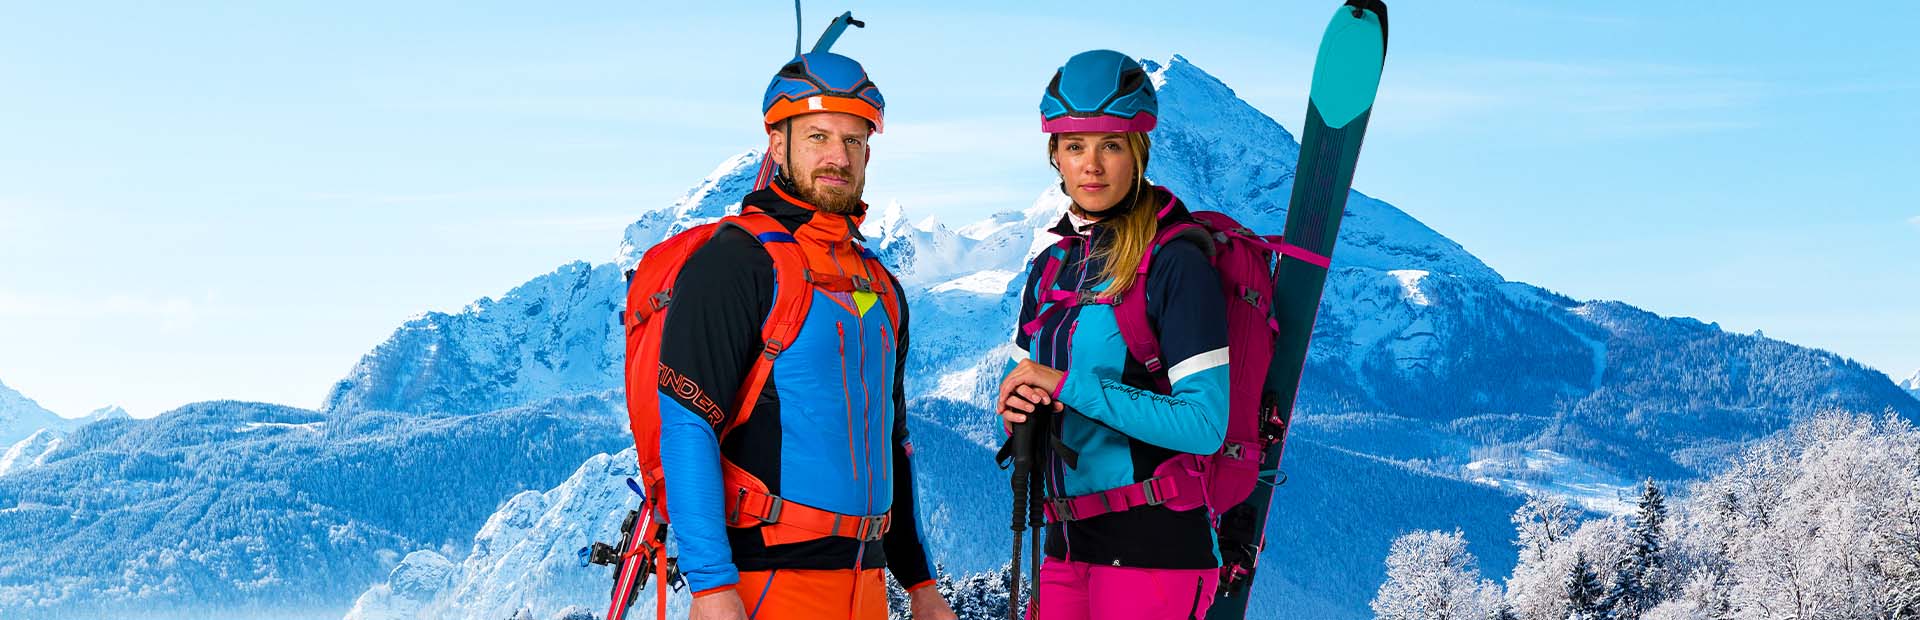 Ako sa obliecť na skialp či skitouring?